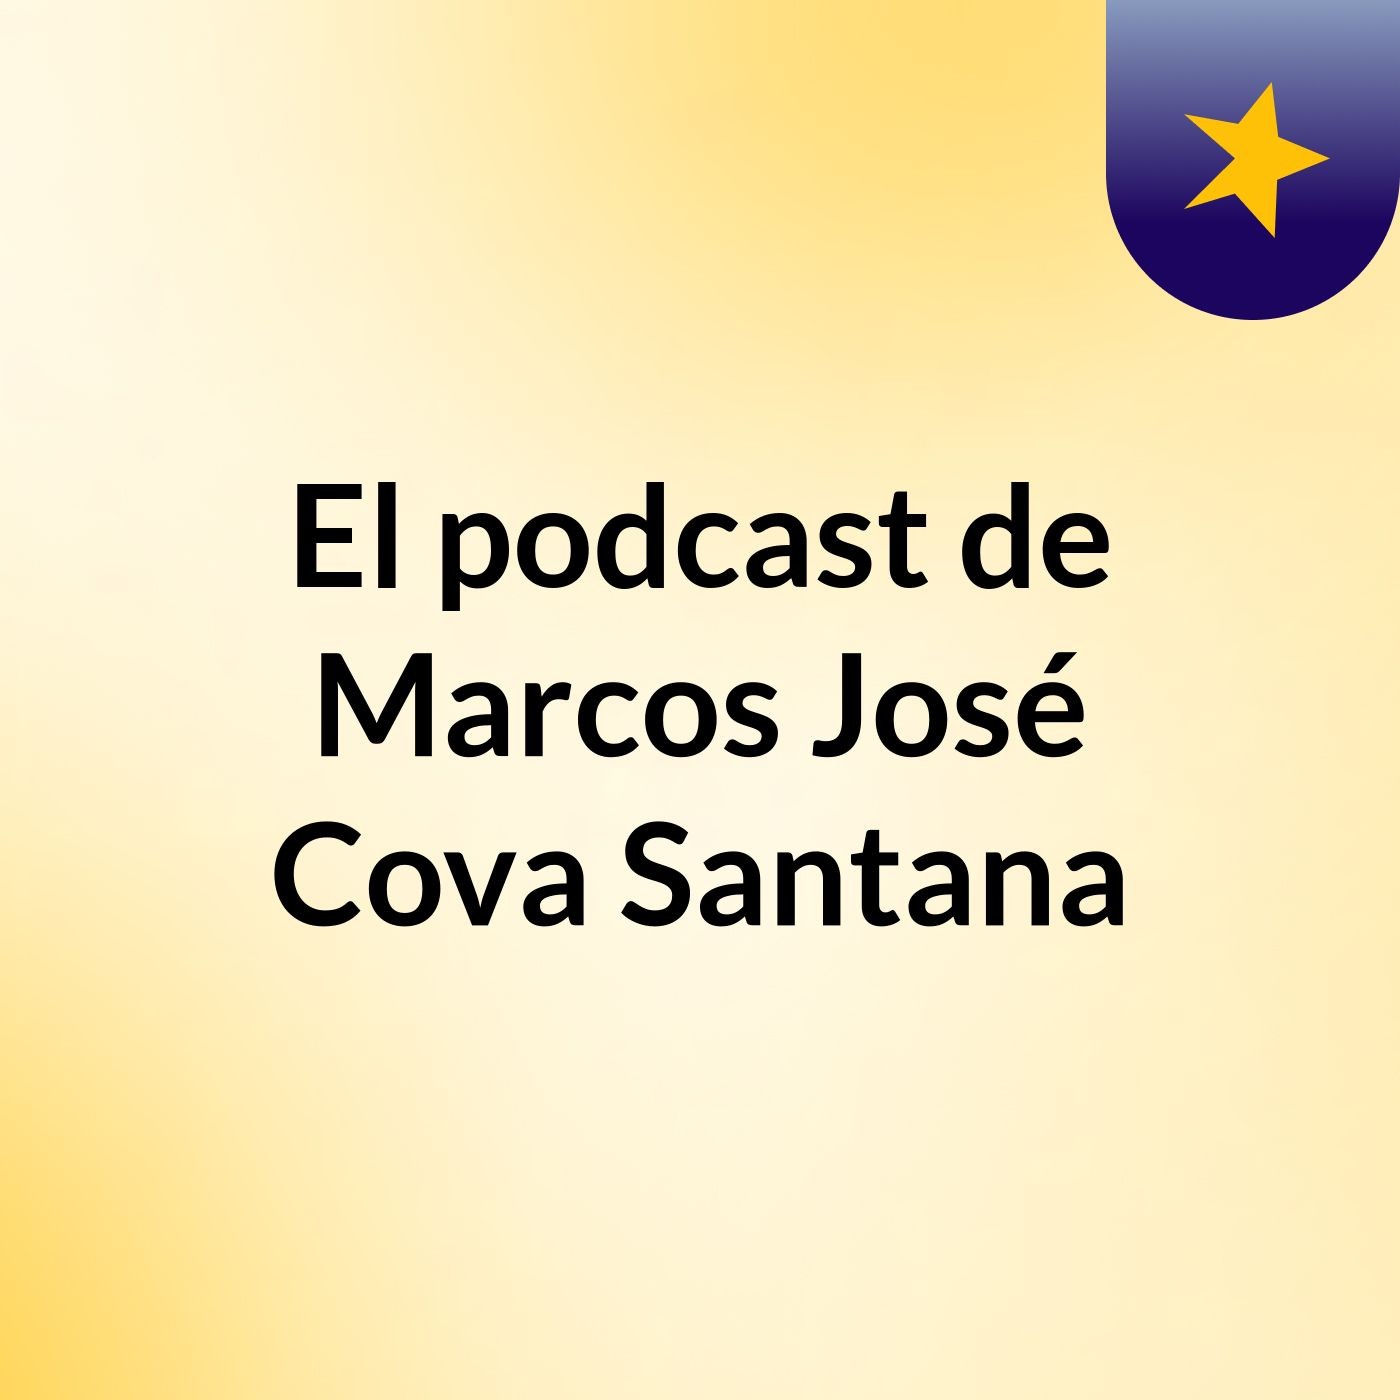 El podcast de Marcos José Cova Santana